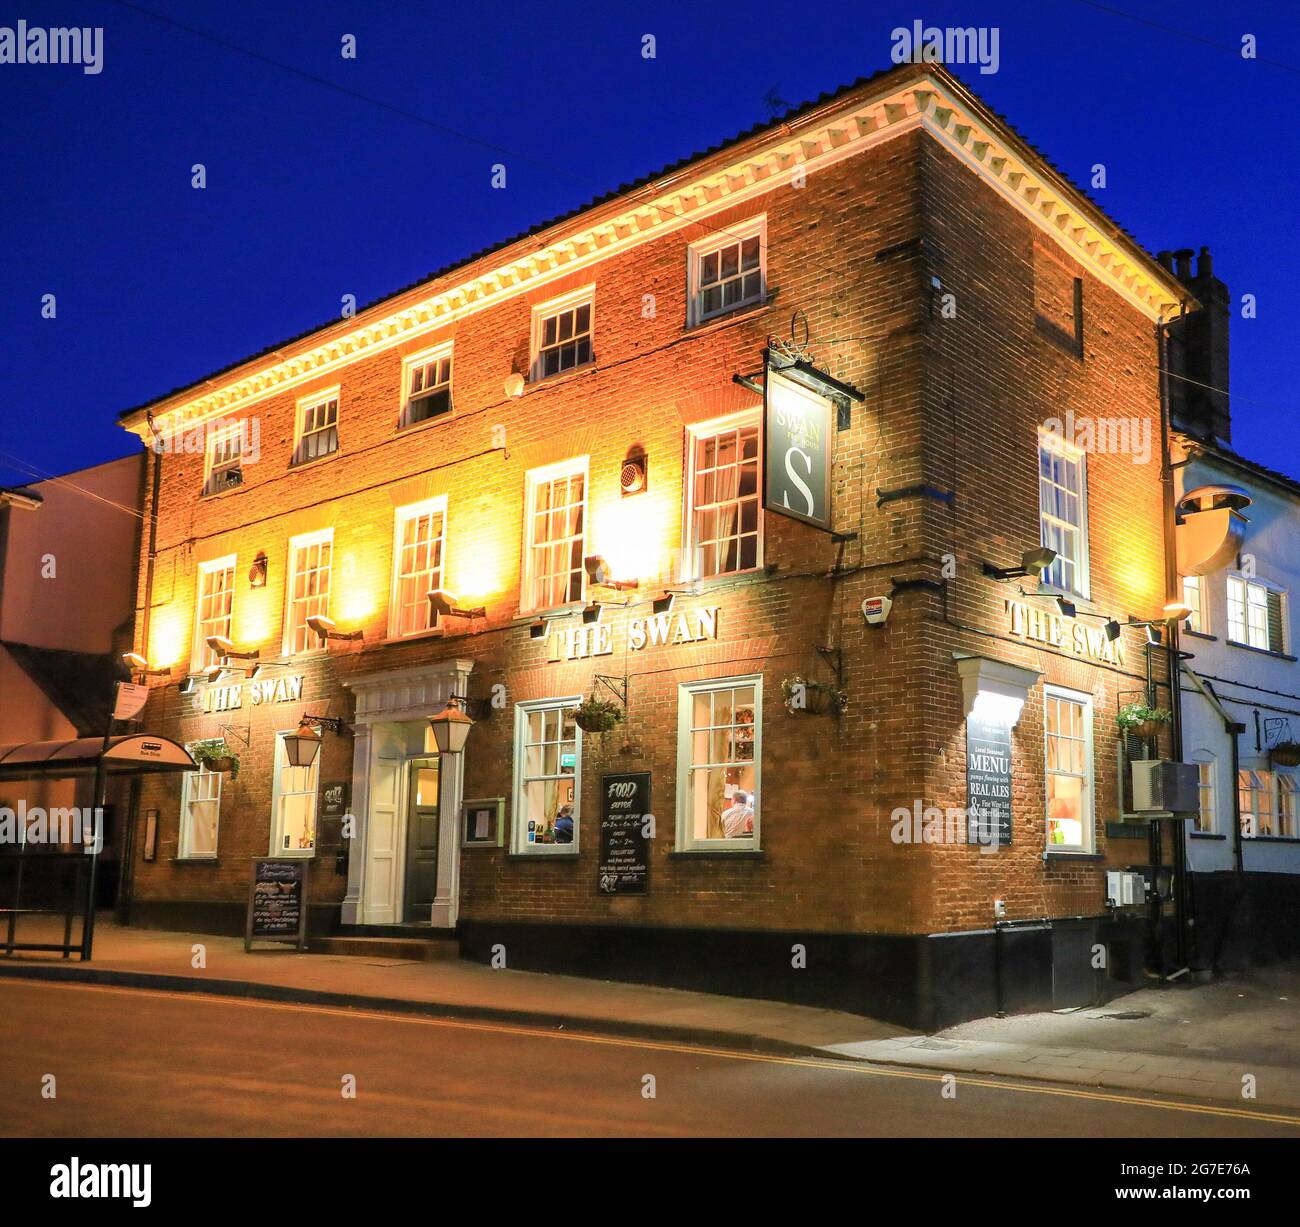 The Swan pub, inn, ou maison publique dans le village de Loddon, Norfolk, Angleterre, Royaume-Uni Banque D'Images